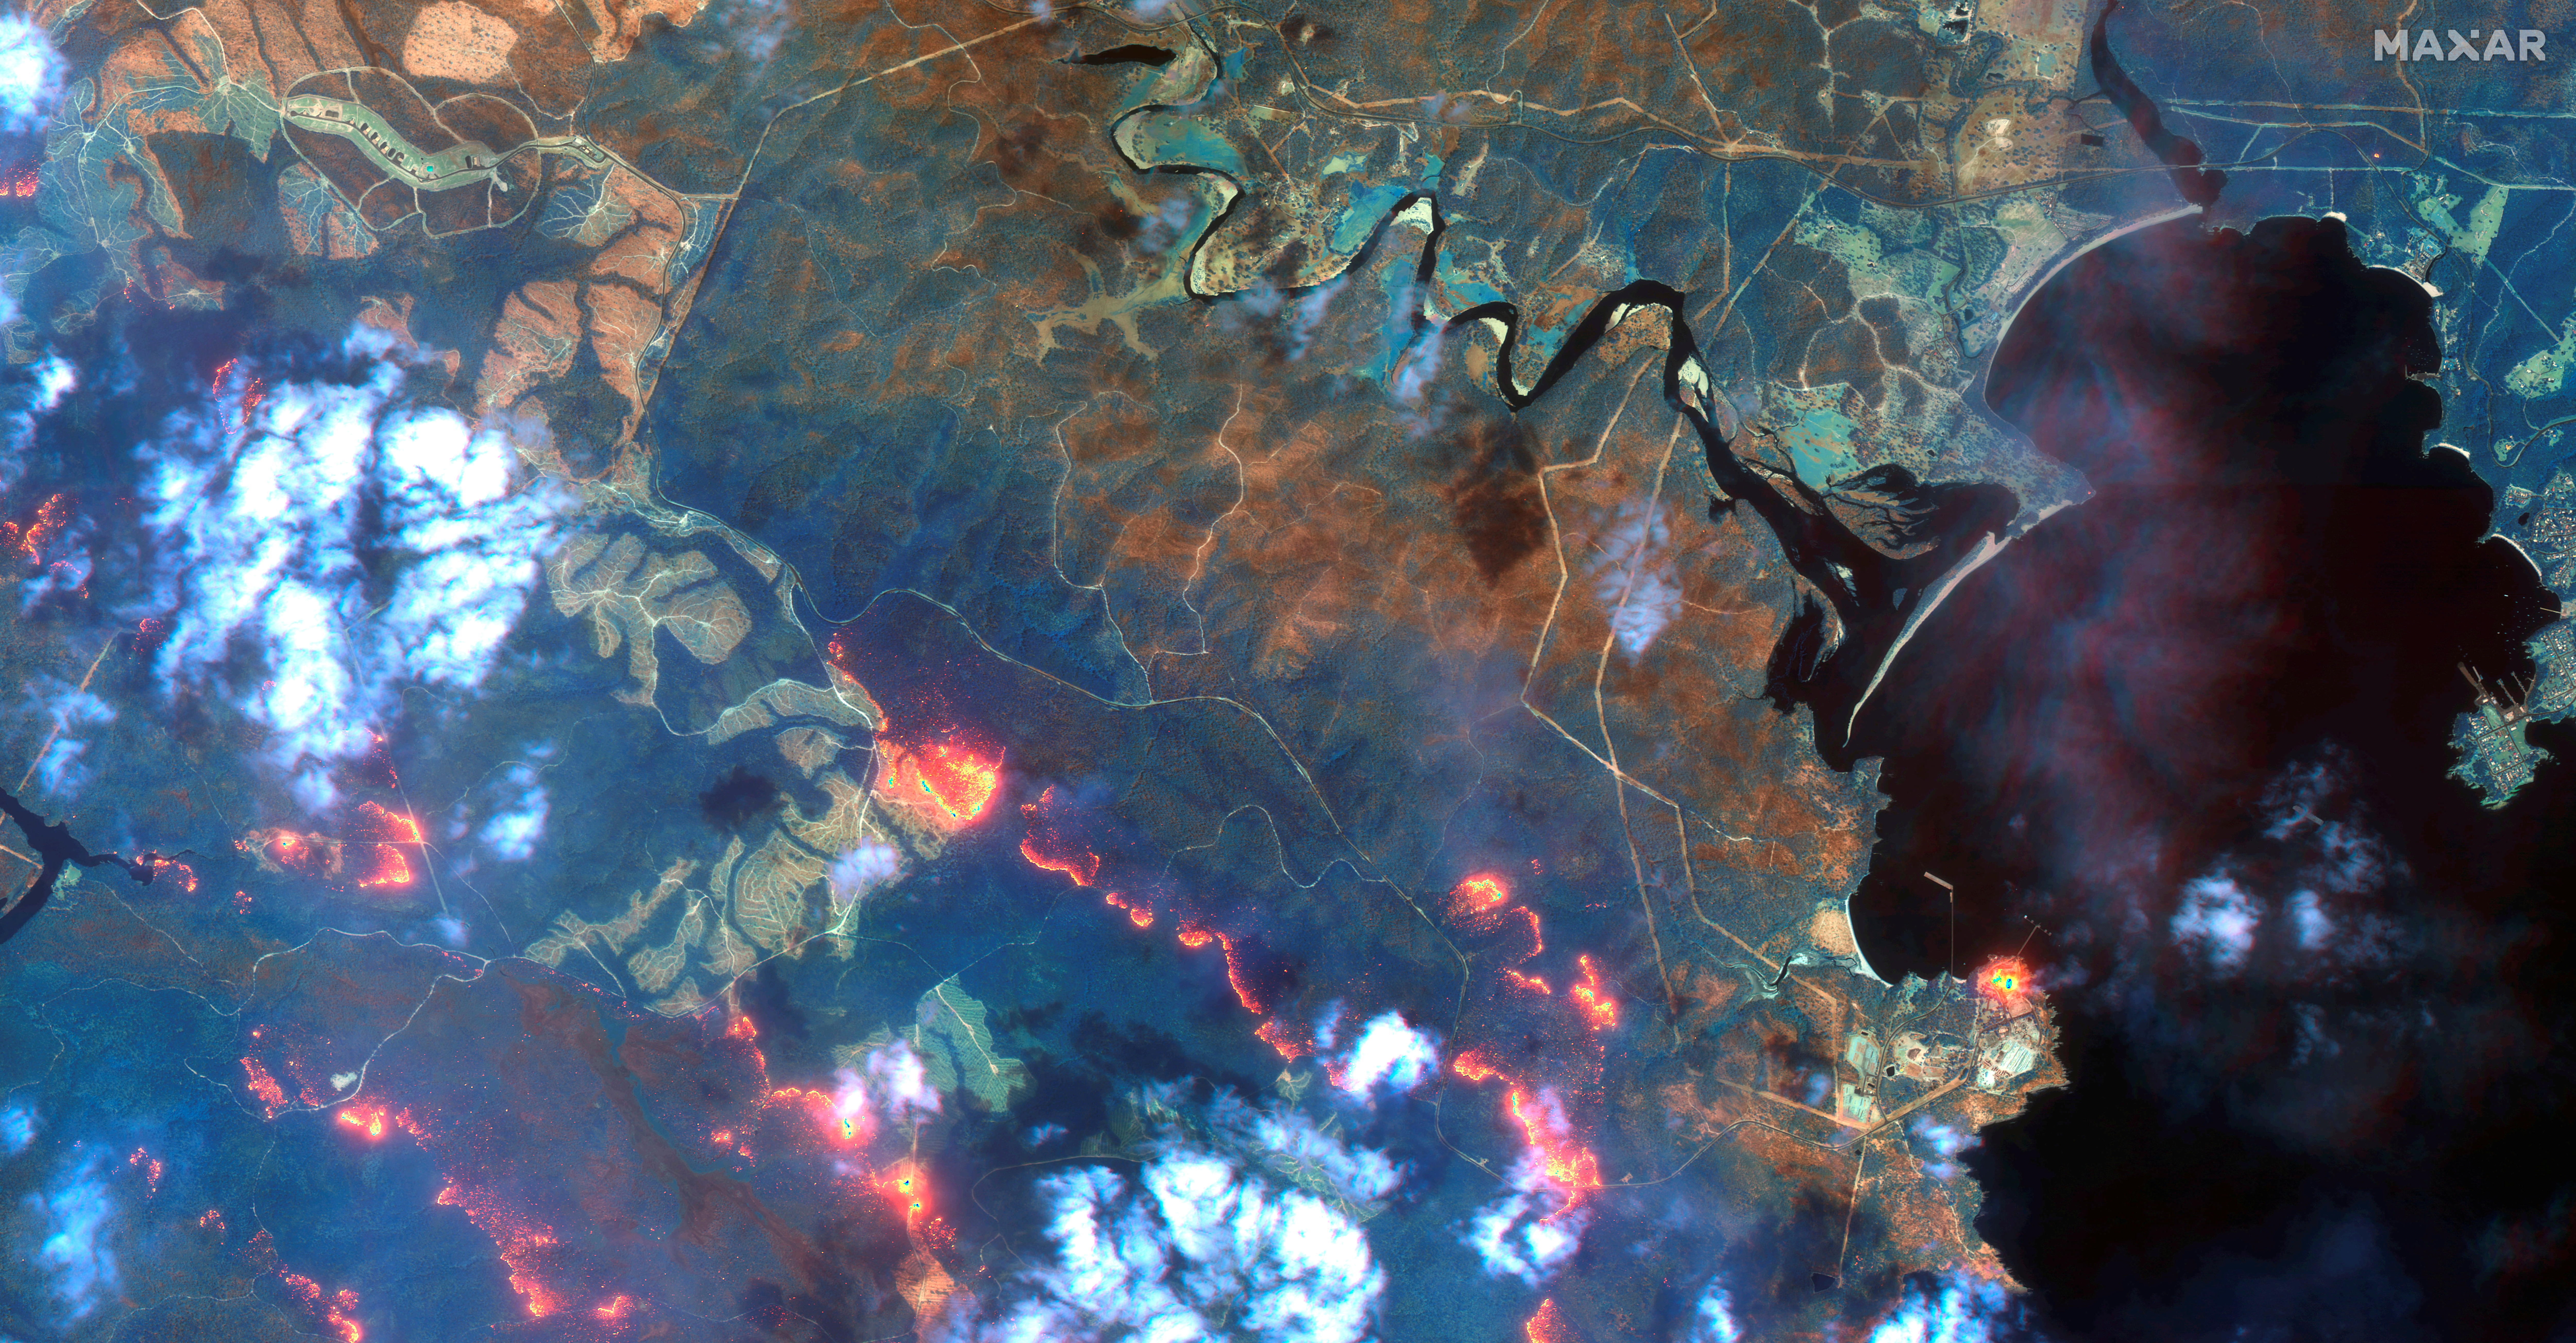 Αυστραλία: Υπό έλεγχο η μεγαλύτερη φωτιά! Εικόνες από δορυφόρο που συγκλονίζουν